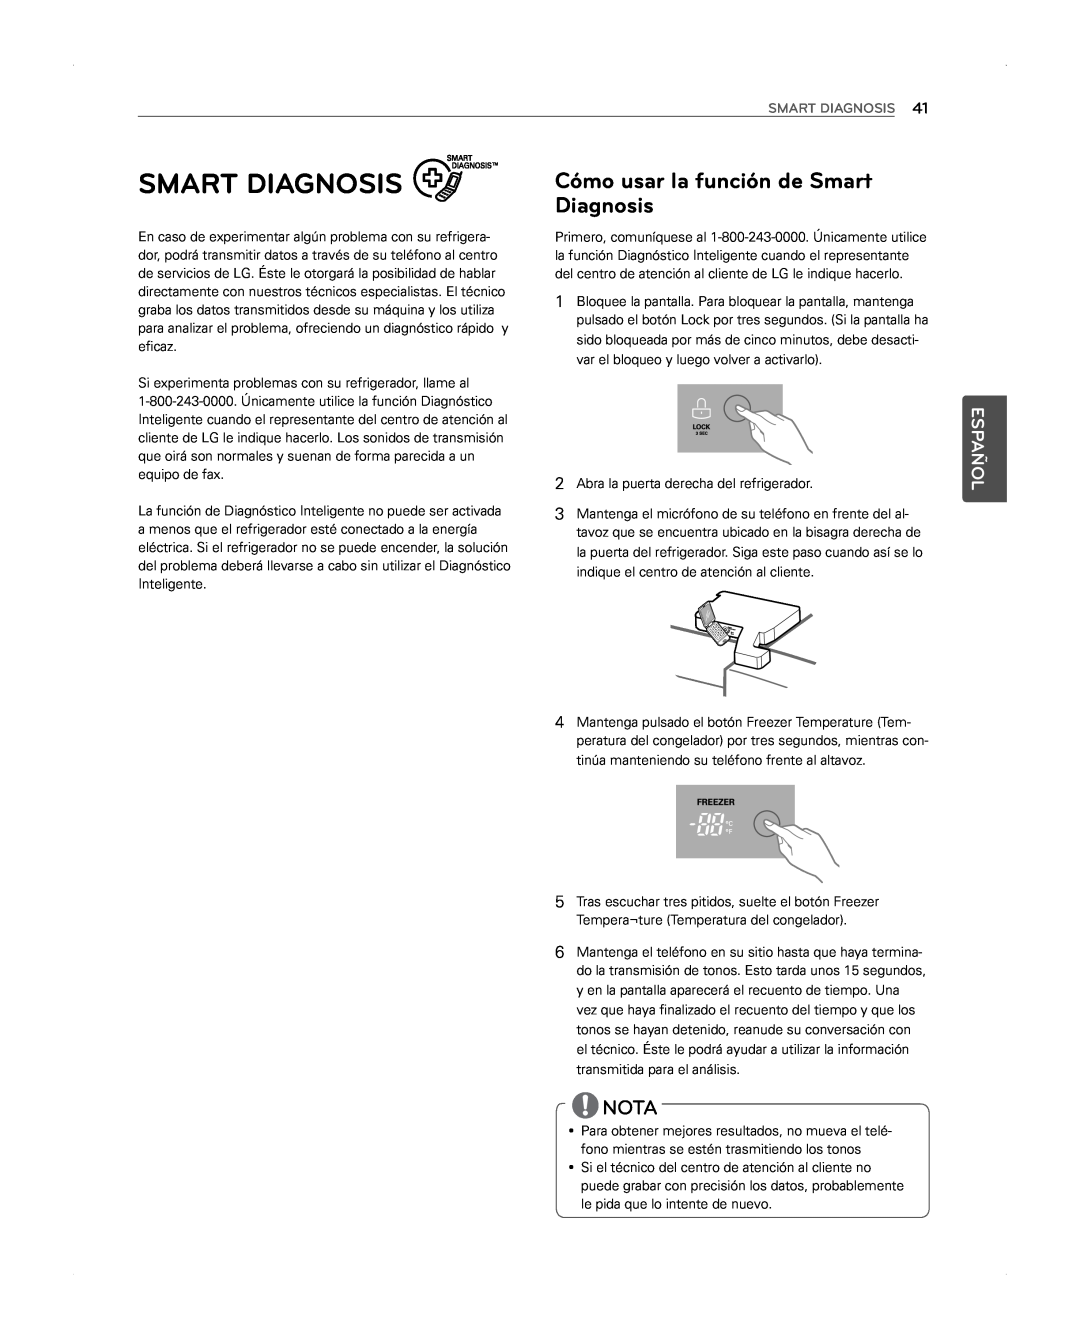 LG Electronics LFX31945ST owner manual Cómo usar la función de Smart Diagnosis, Nota, Español 